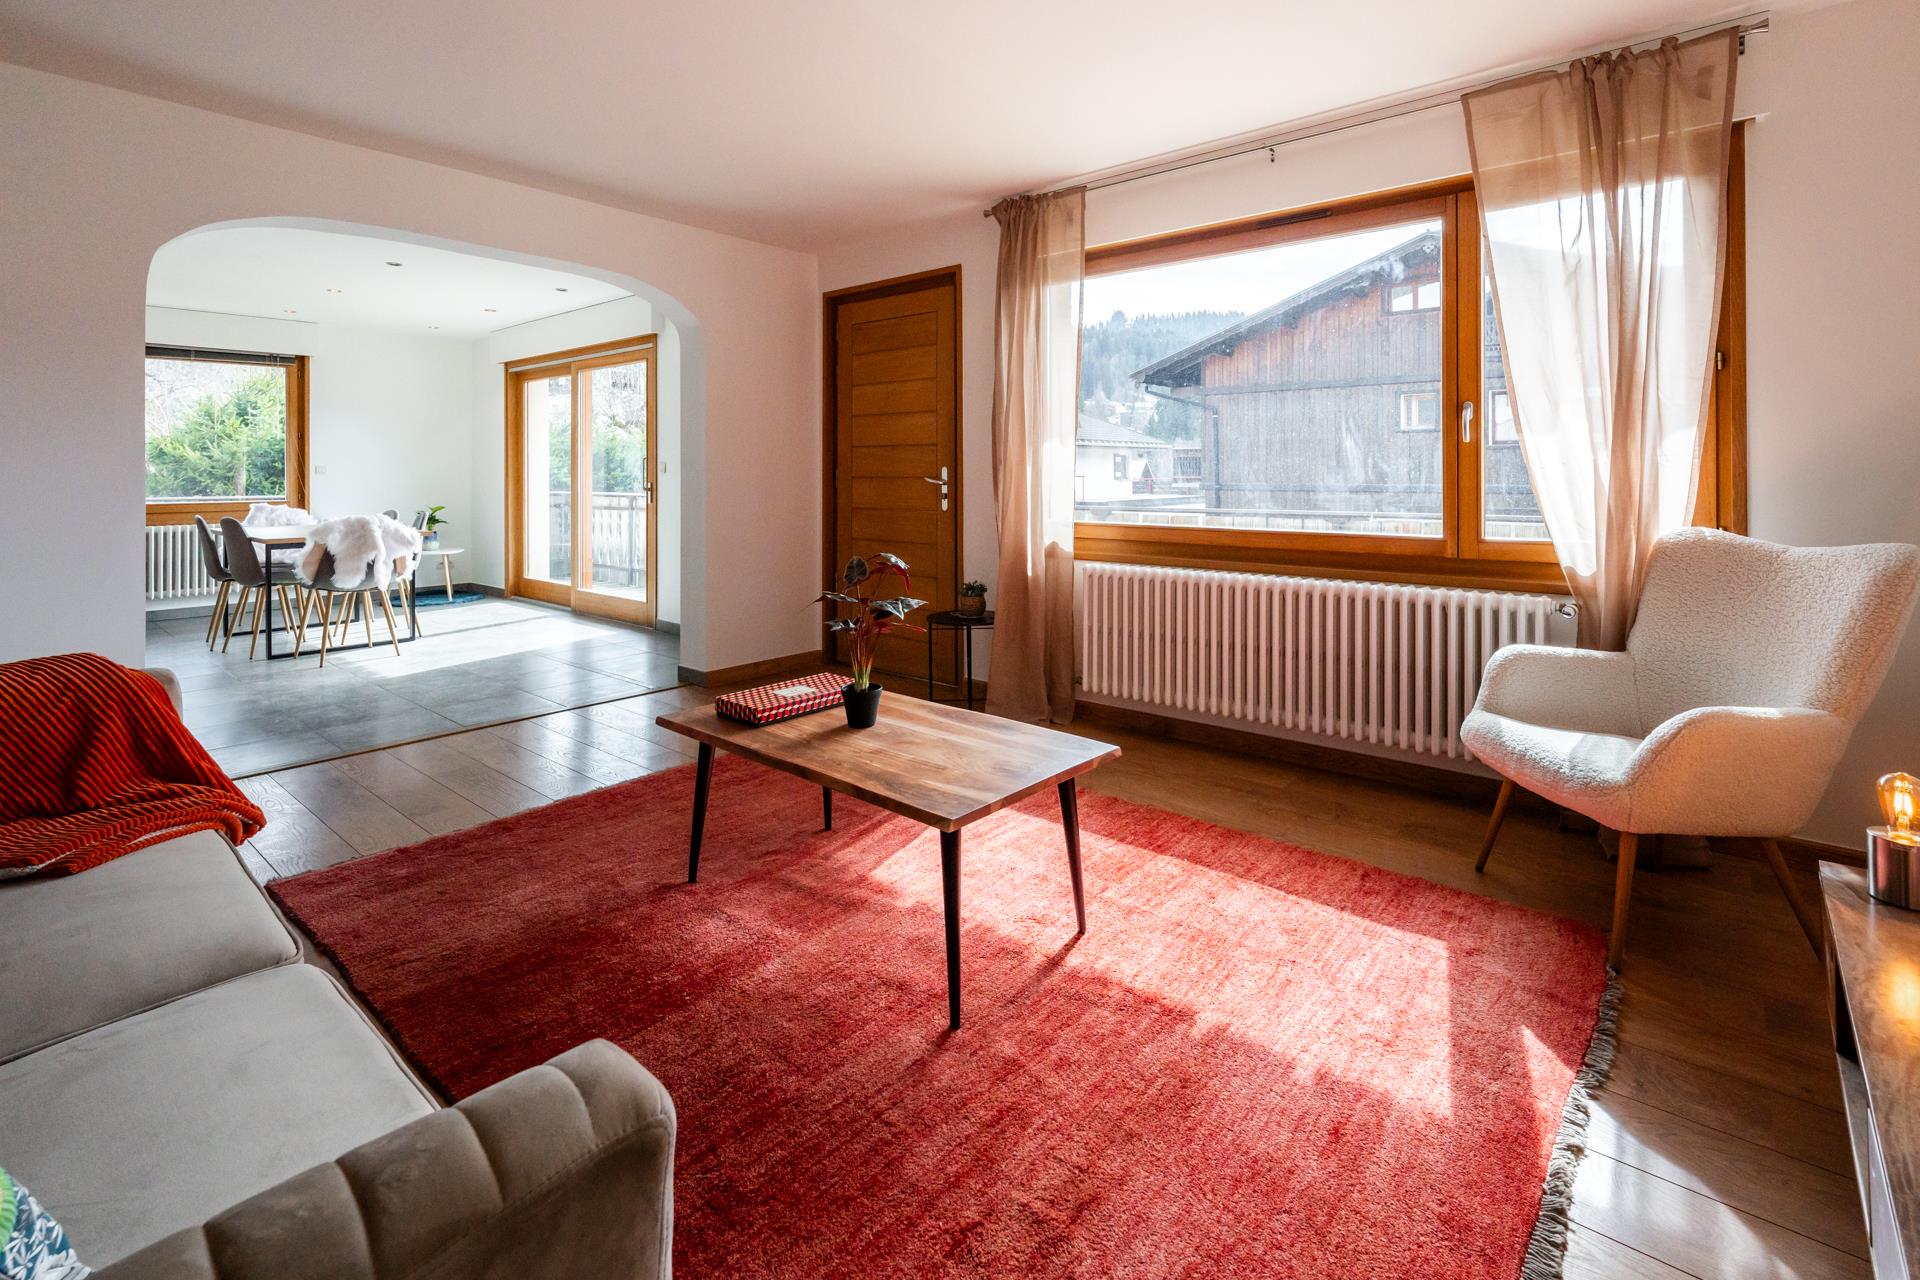 Ideal gelegene 113 m² große Wohnung im Herzen des Alpendorfes Les Gets mit herrlichem Berg